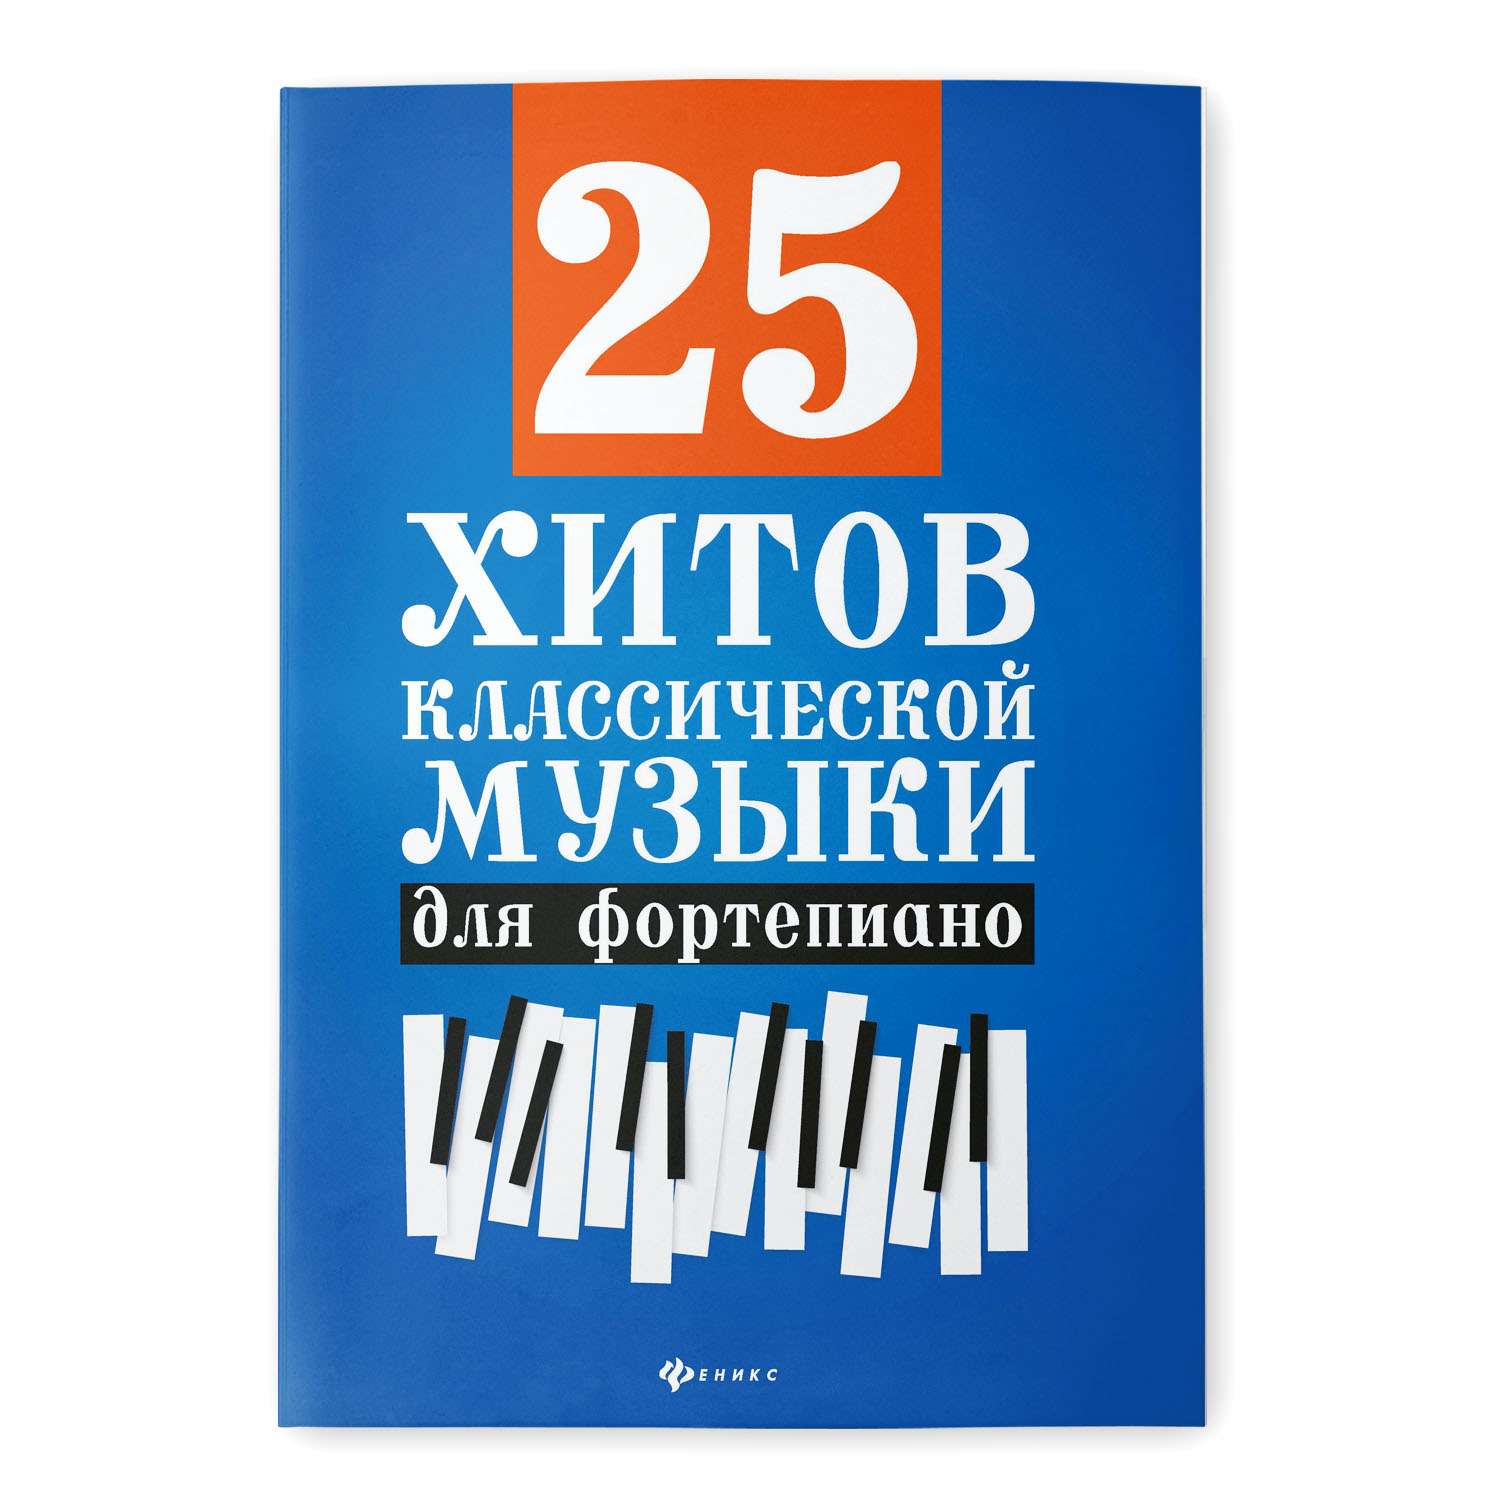 Книга ТД Феникс 25 хитов классической музыки для фортепиано - фото 1